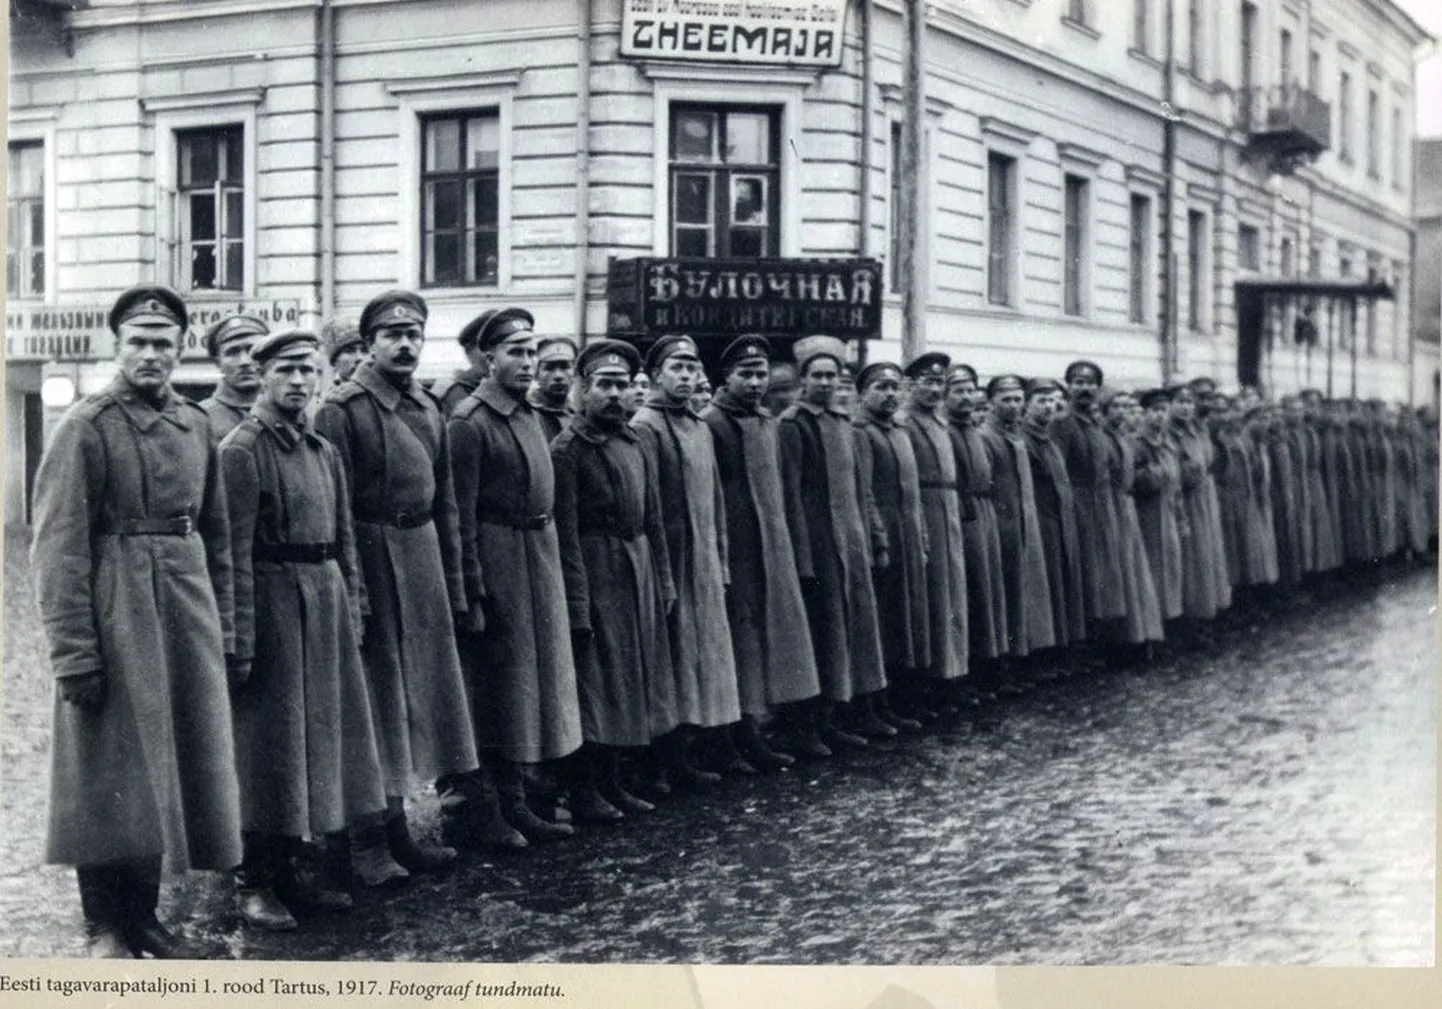 1917. aastal pärast Veebruarirevolutsiooni loodud Eesti rahvusväeosa, Eesti tagavarapataljoni 1. roodu ohvitserid ja sõdurid 1917. aastal Tartus.